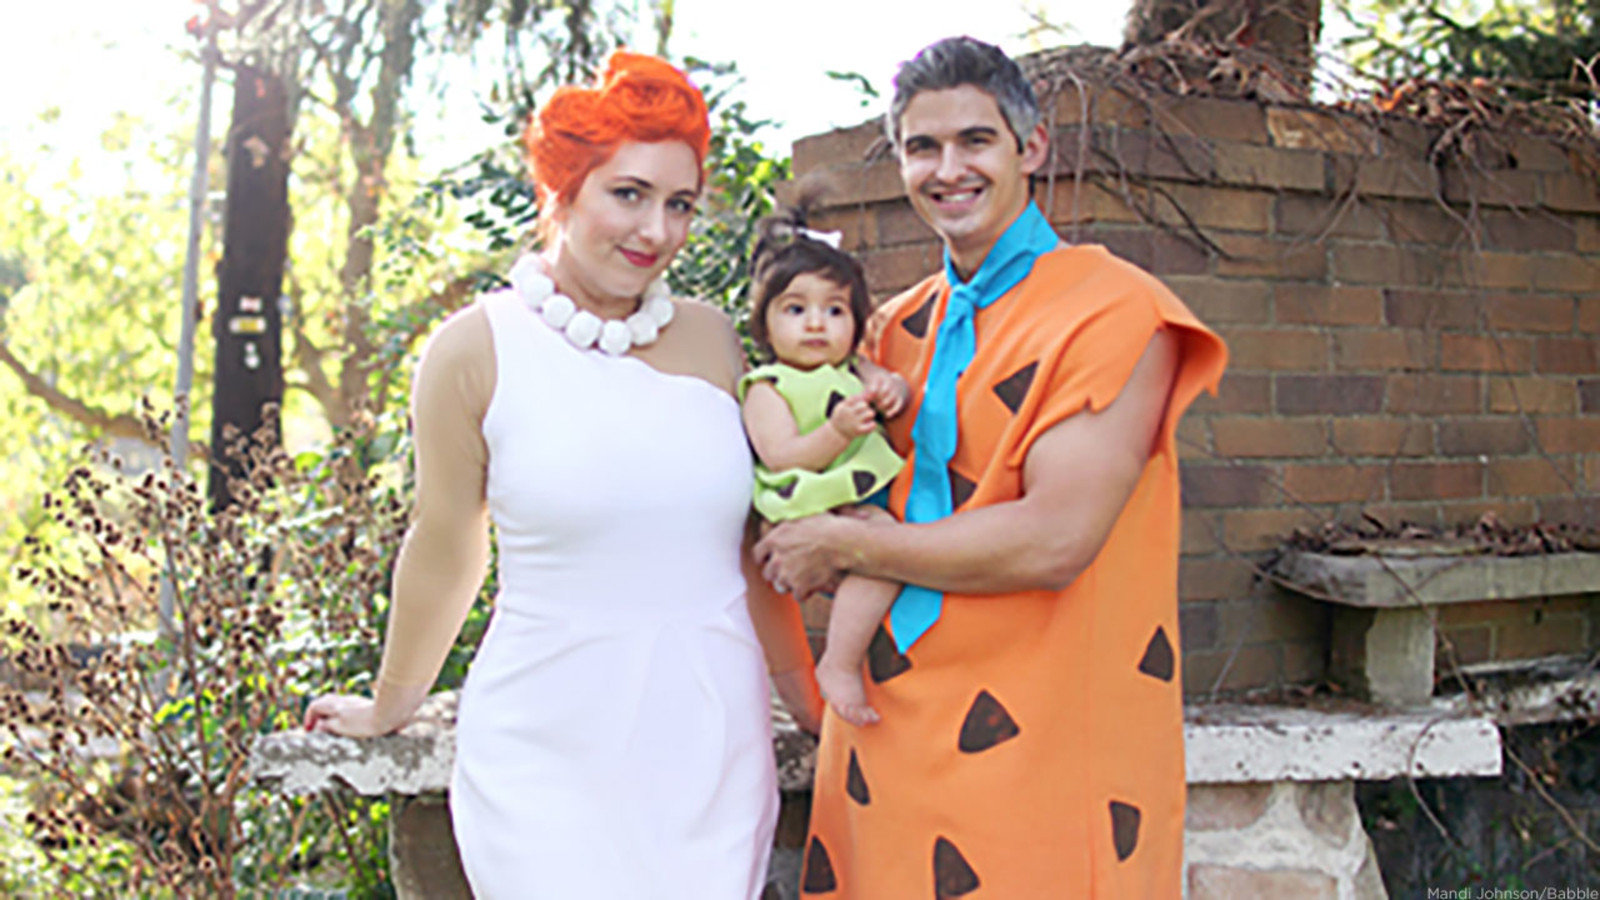 Flintstones Costumes DIY
 DIY Flintstones Halloween costumes will have you looking